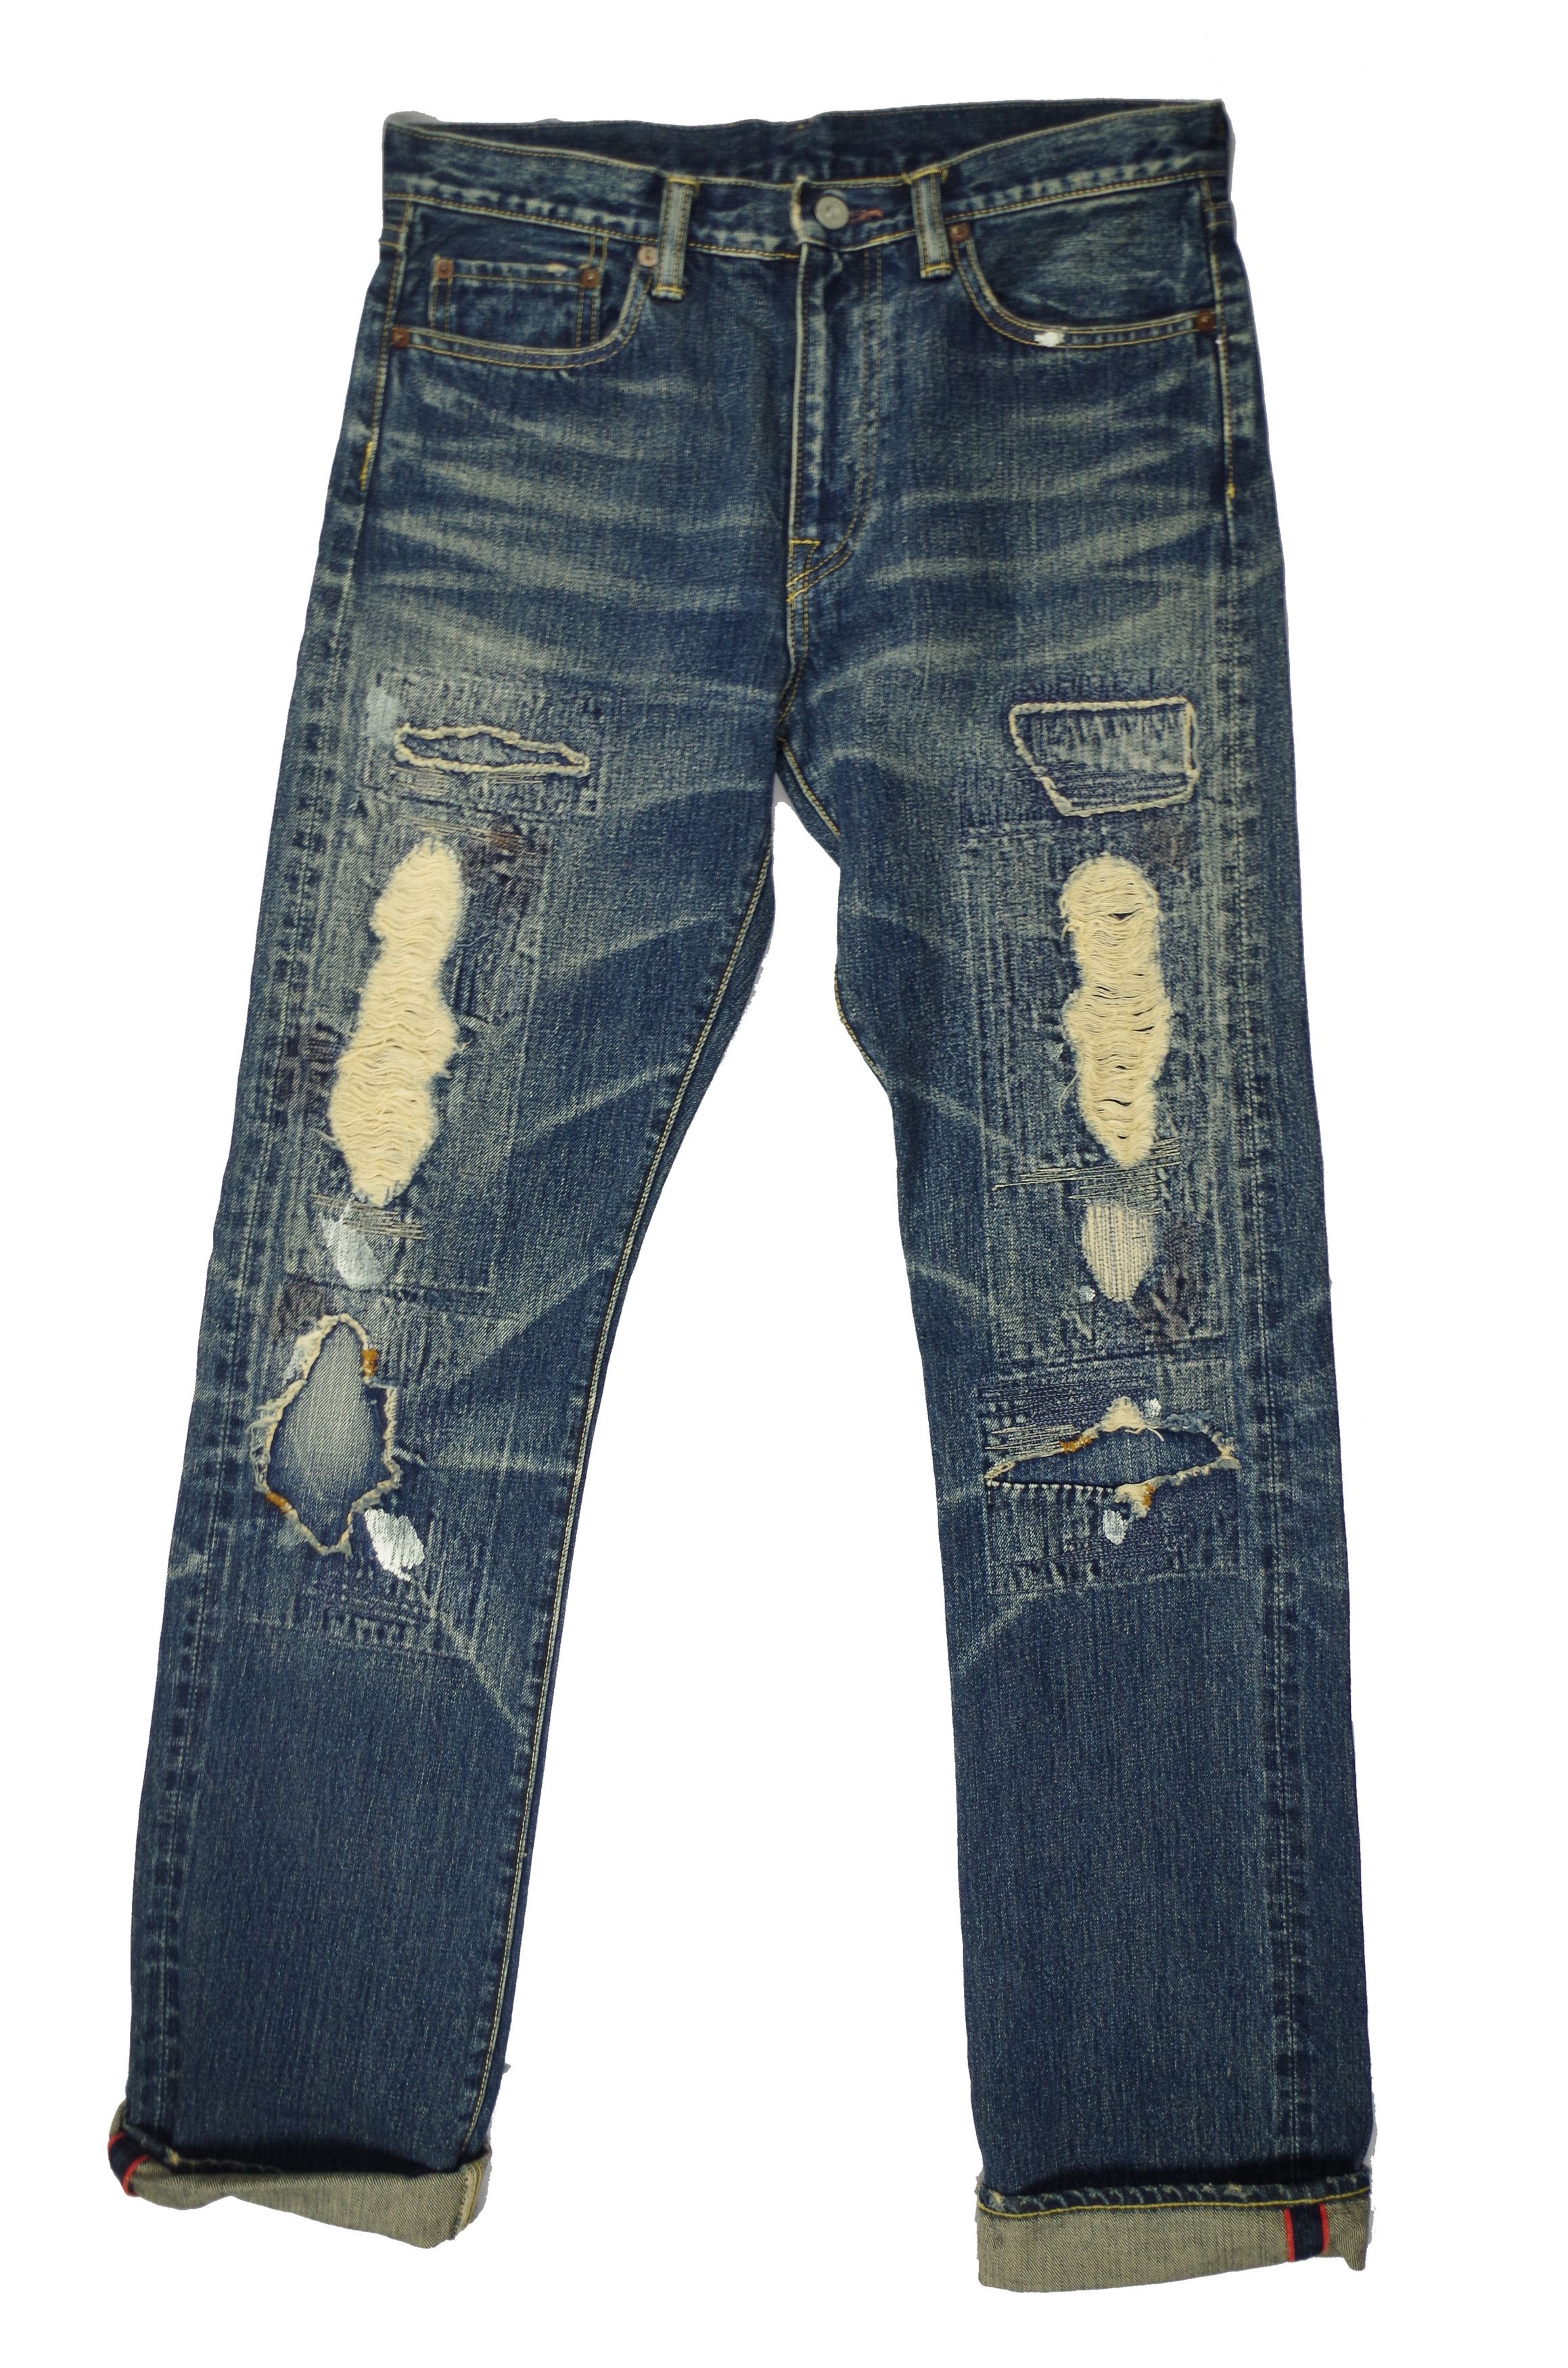 Kapital crash remake patchwork jeans | Grailed